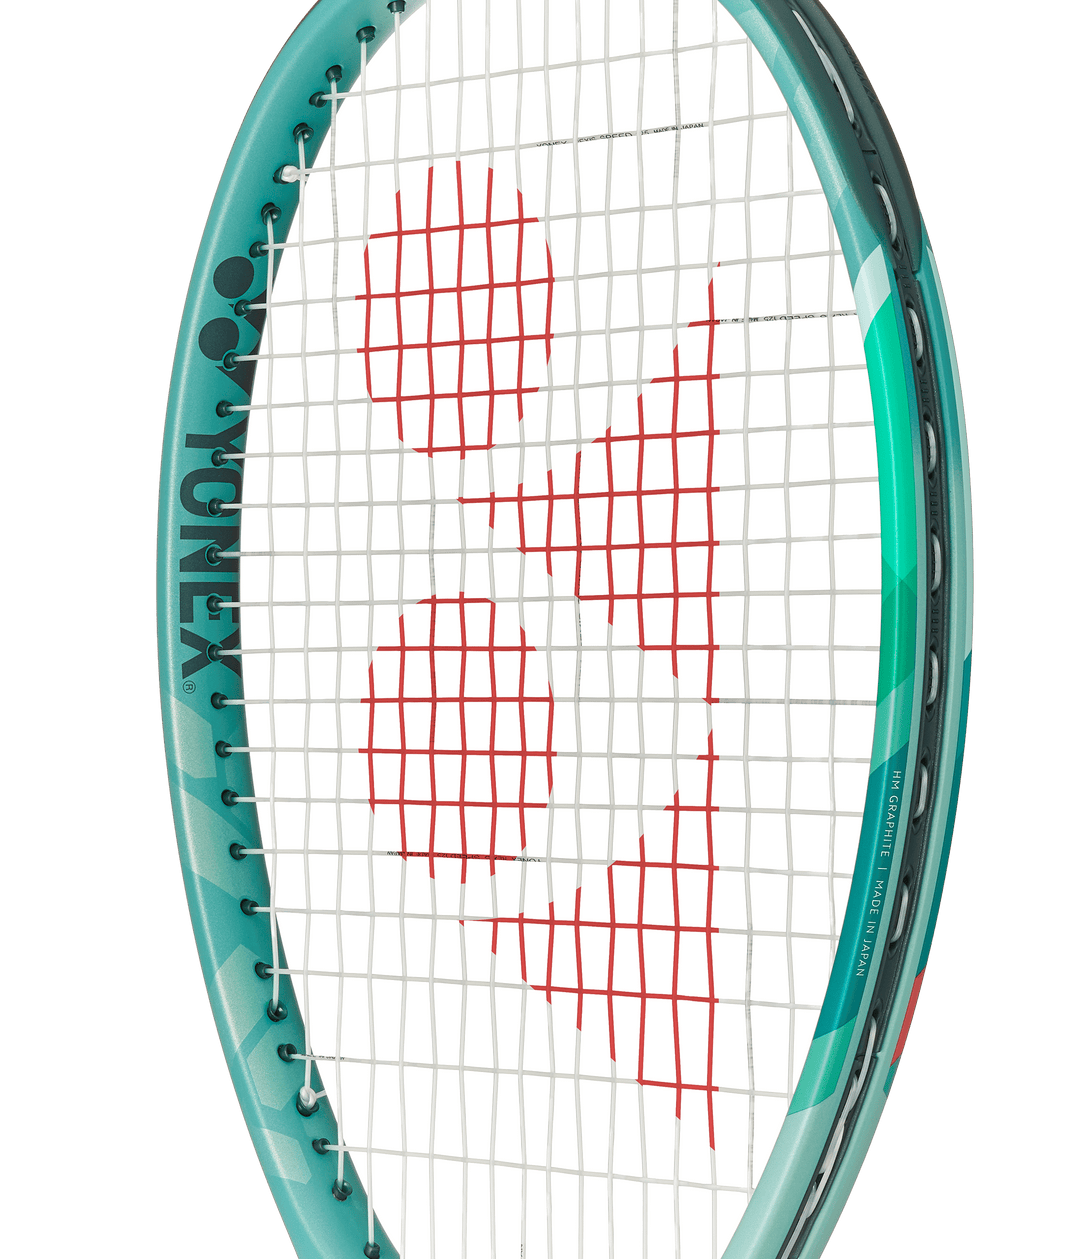 Yonex Percept 100D 305g 18x19 Tennis Racquet Unstrung Tennis racquets Yonex 